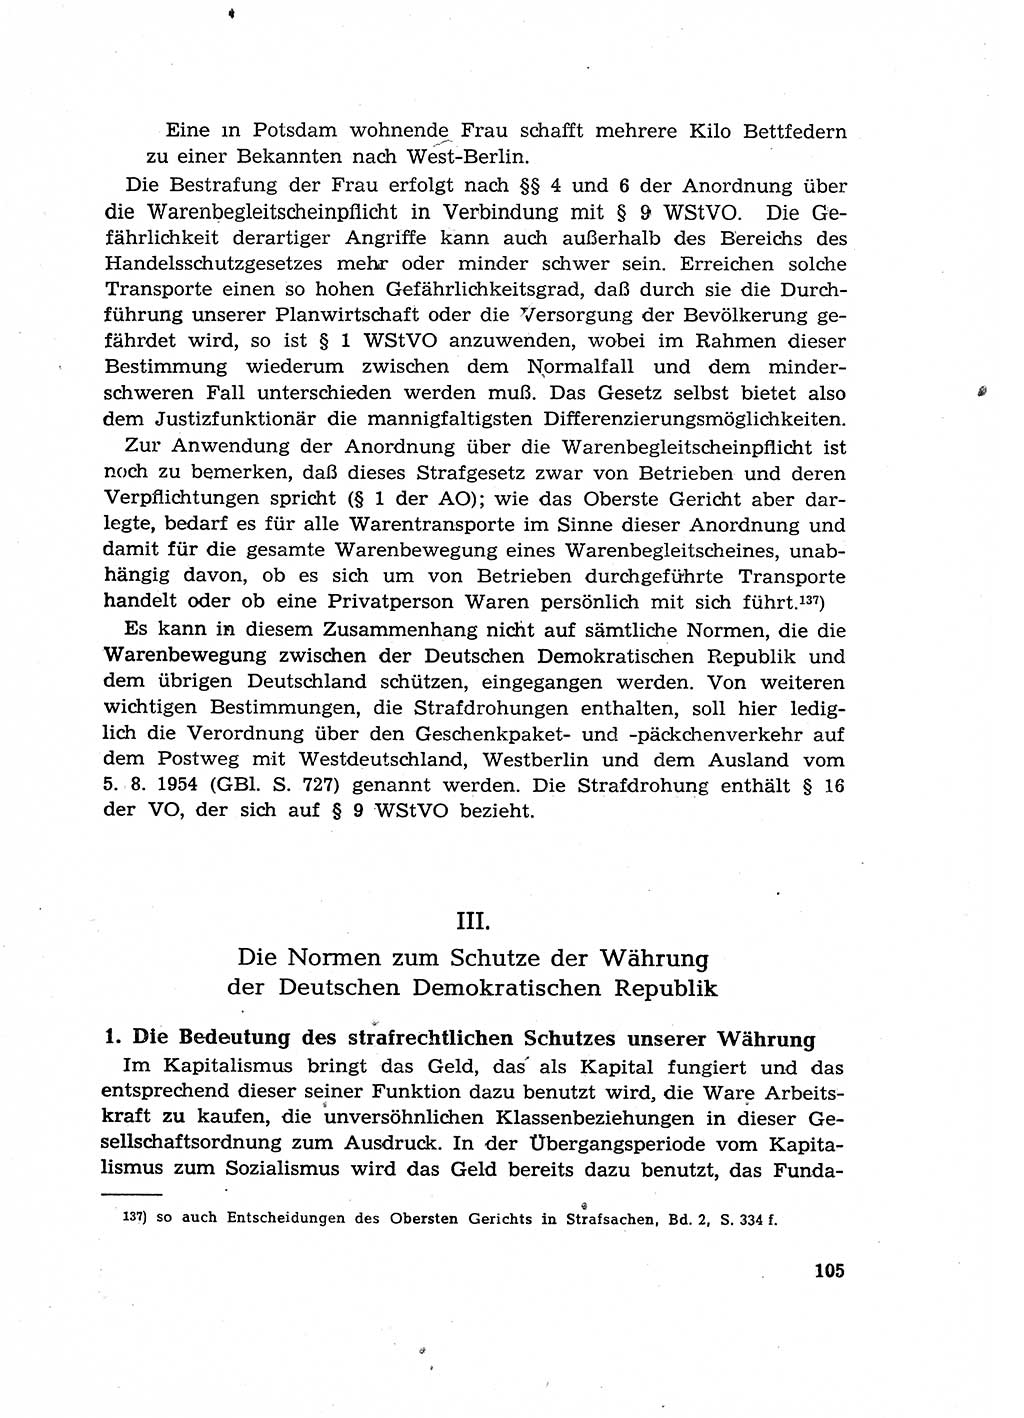 Materialien zum Strafrecht, Besonderer Teil [Deutsche Demokratische Republik (DDR)] 1955, Seite 105 (Mat. Strafr. BT DDR 1955, S. 105)